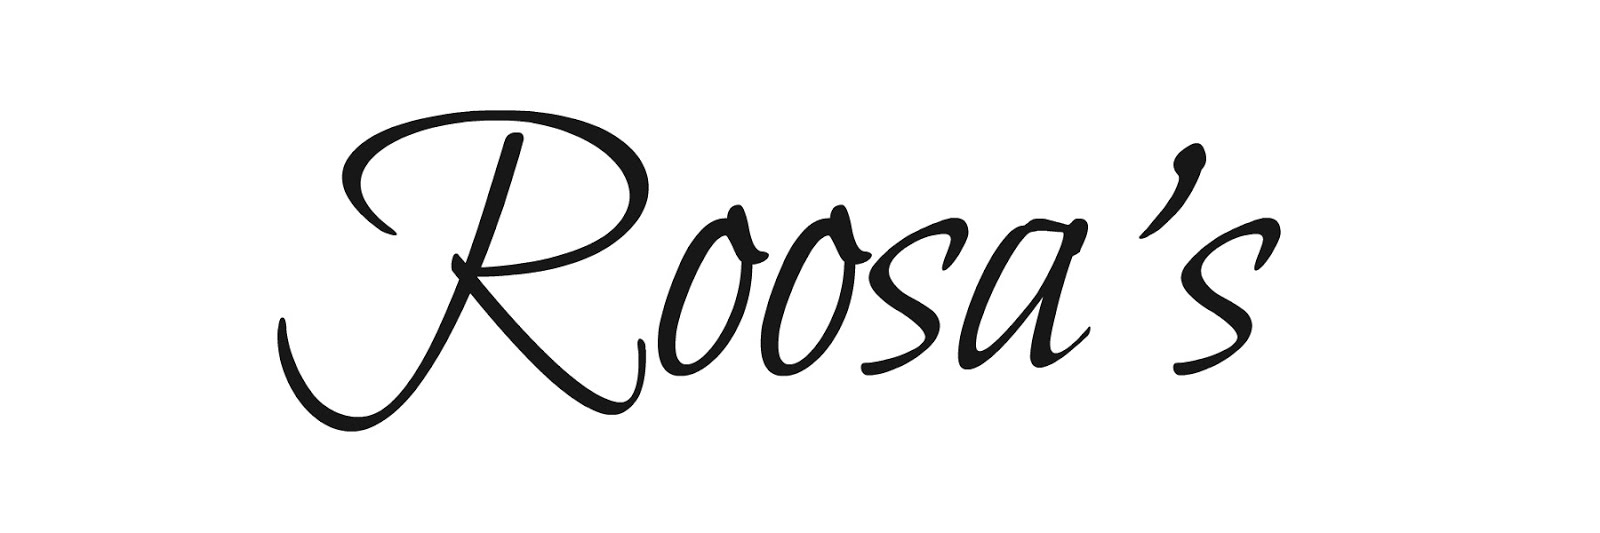 Roosa's